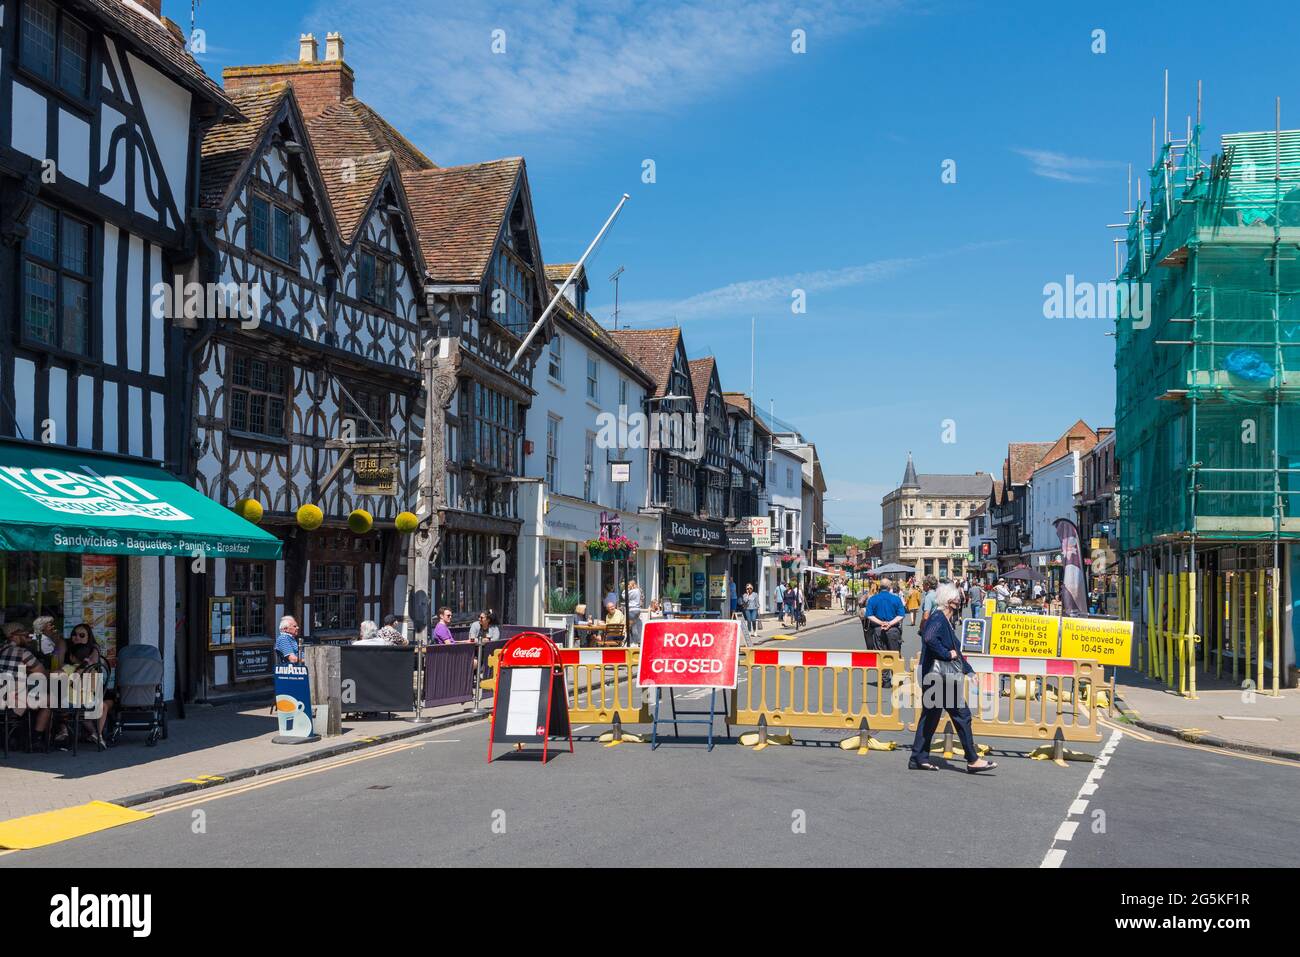 High Street à Stratford-upon-Avon, Warwickshire est fermé à la circulation pour la distance sociale et des places assises en plein air pour les cafés et les restaurants Banque D'Images